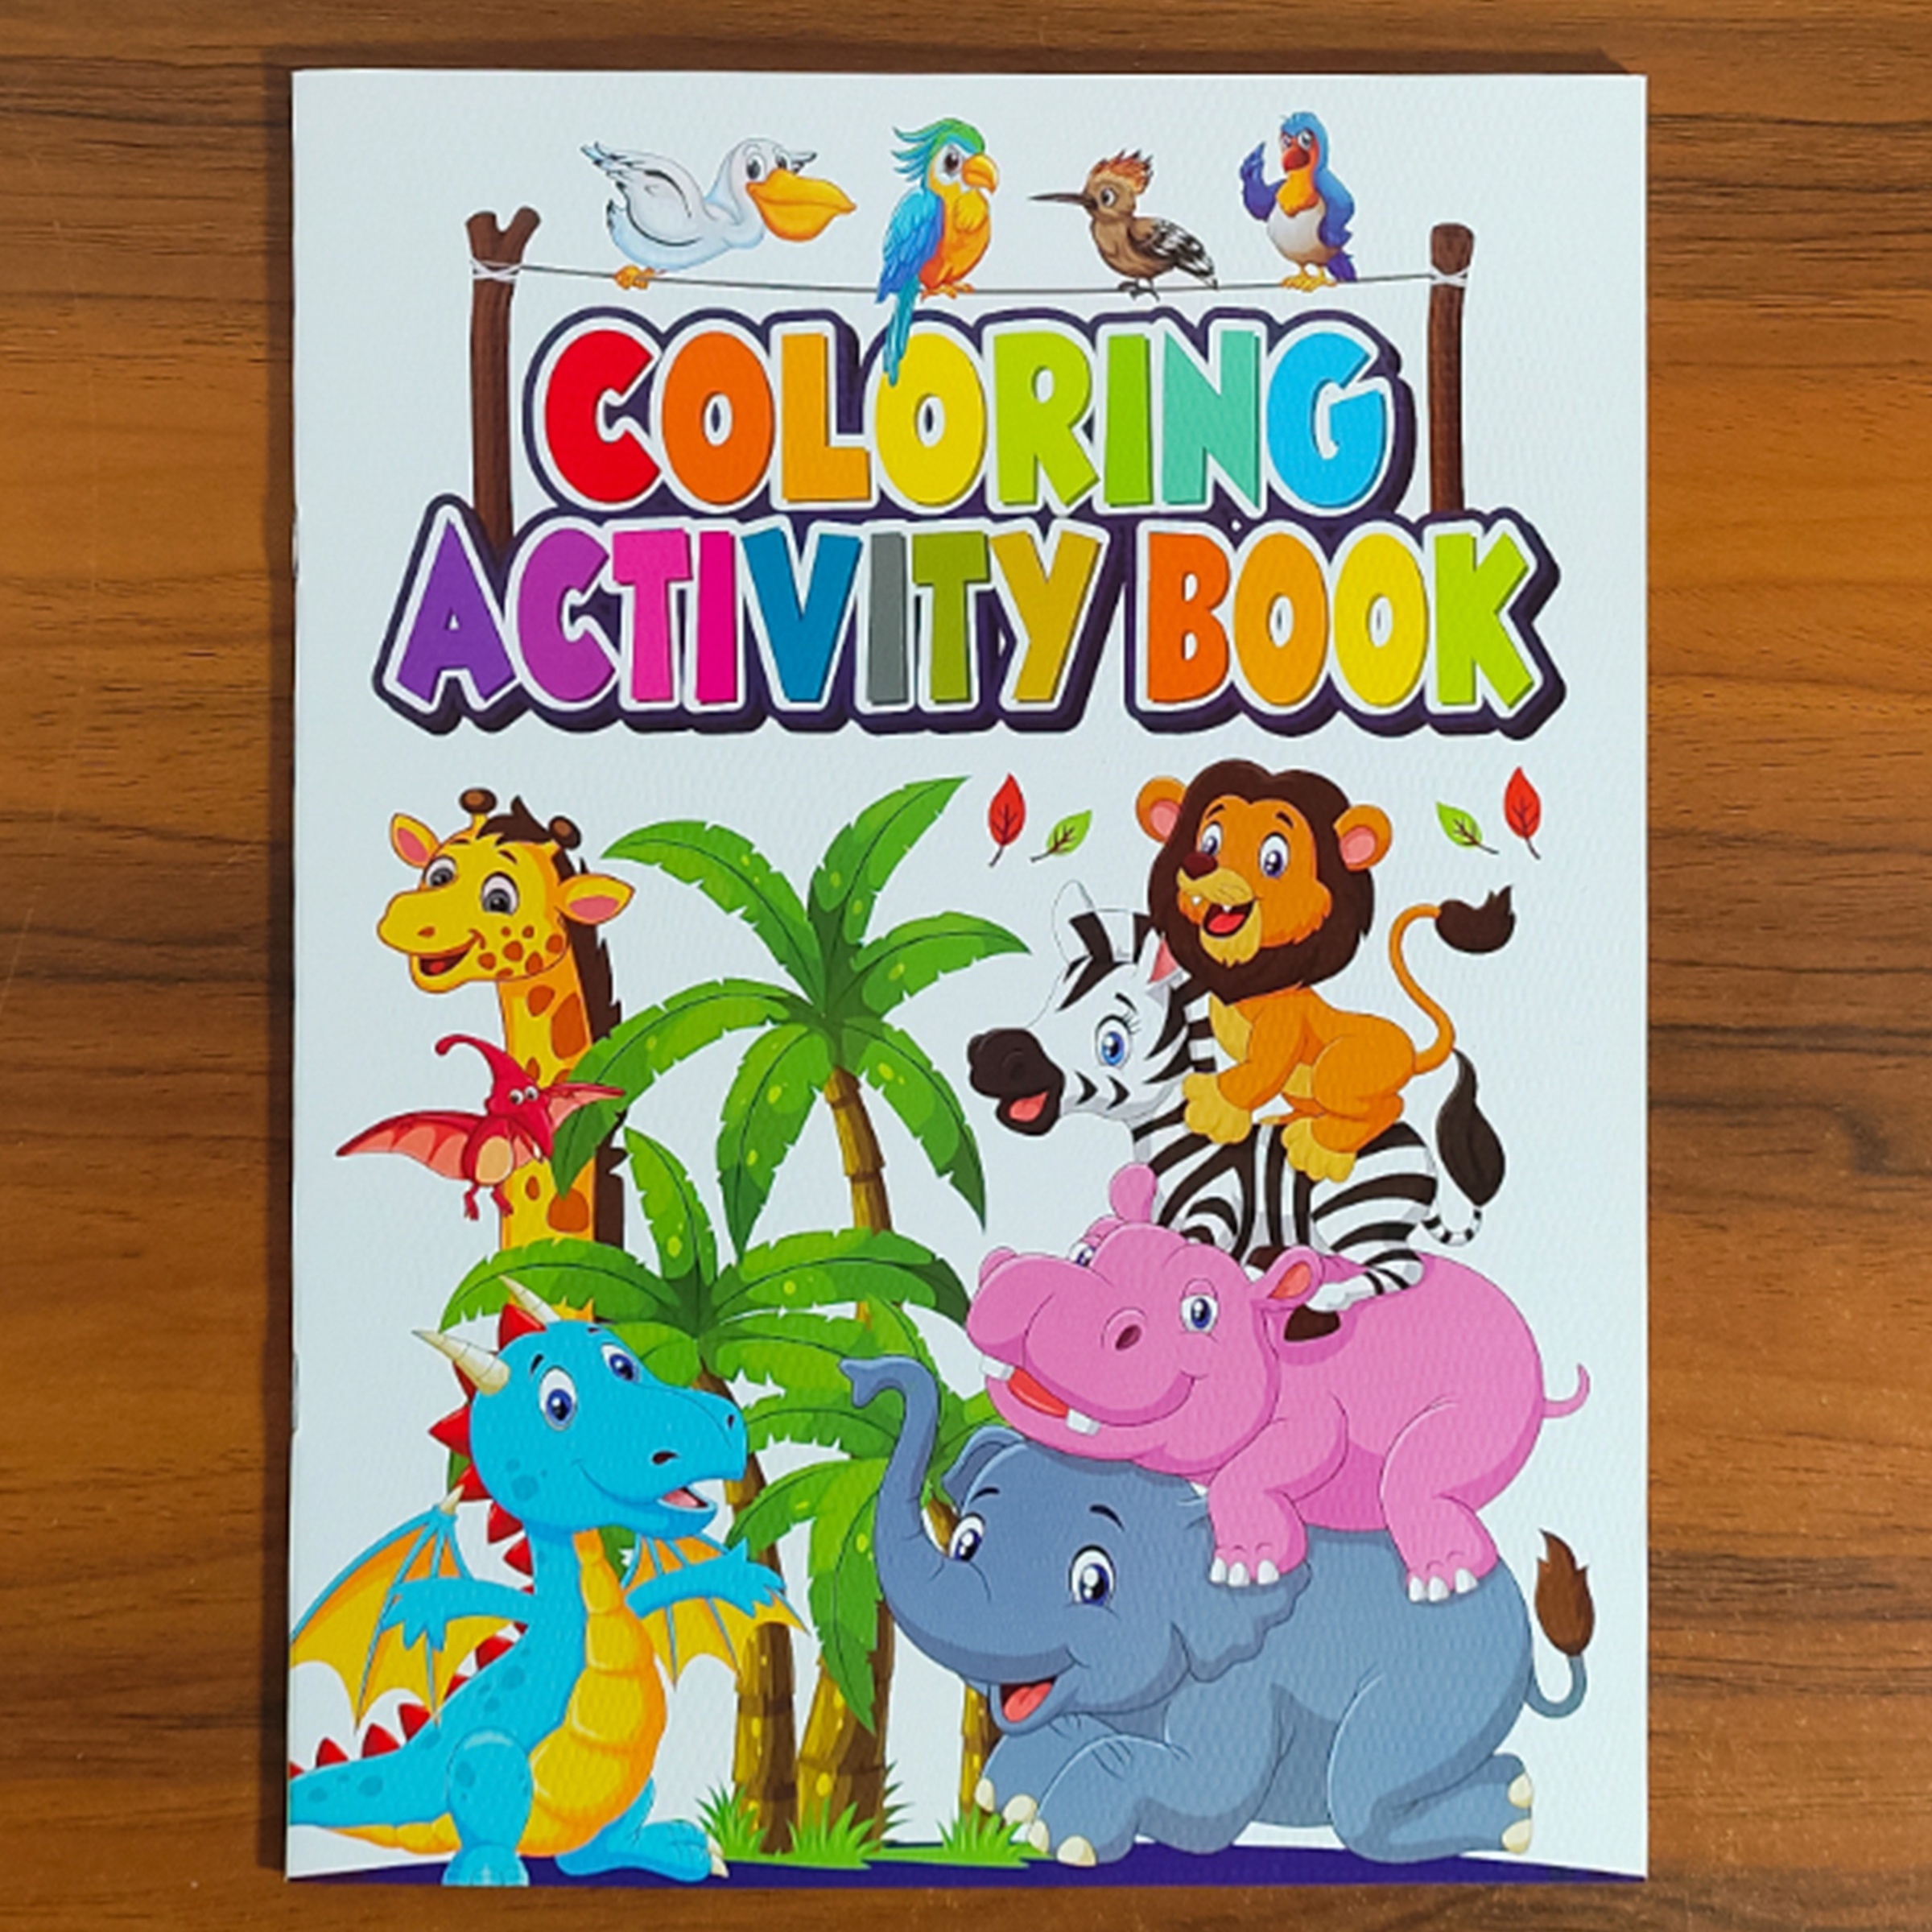 Cuaderno para colorear - Imagenes Educativas  Libros para colorear,  Dibujos para colorear, Animales animados para colorear